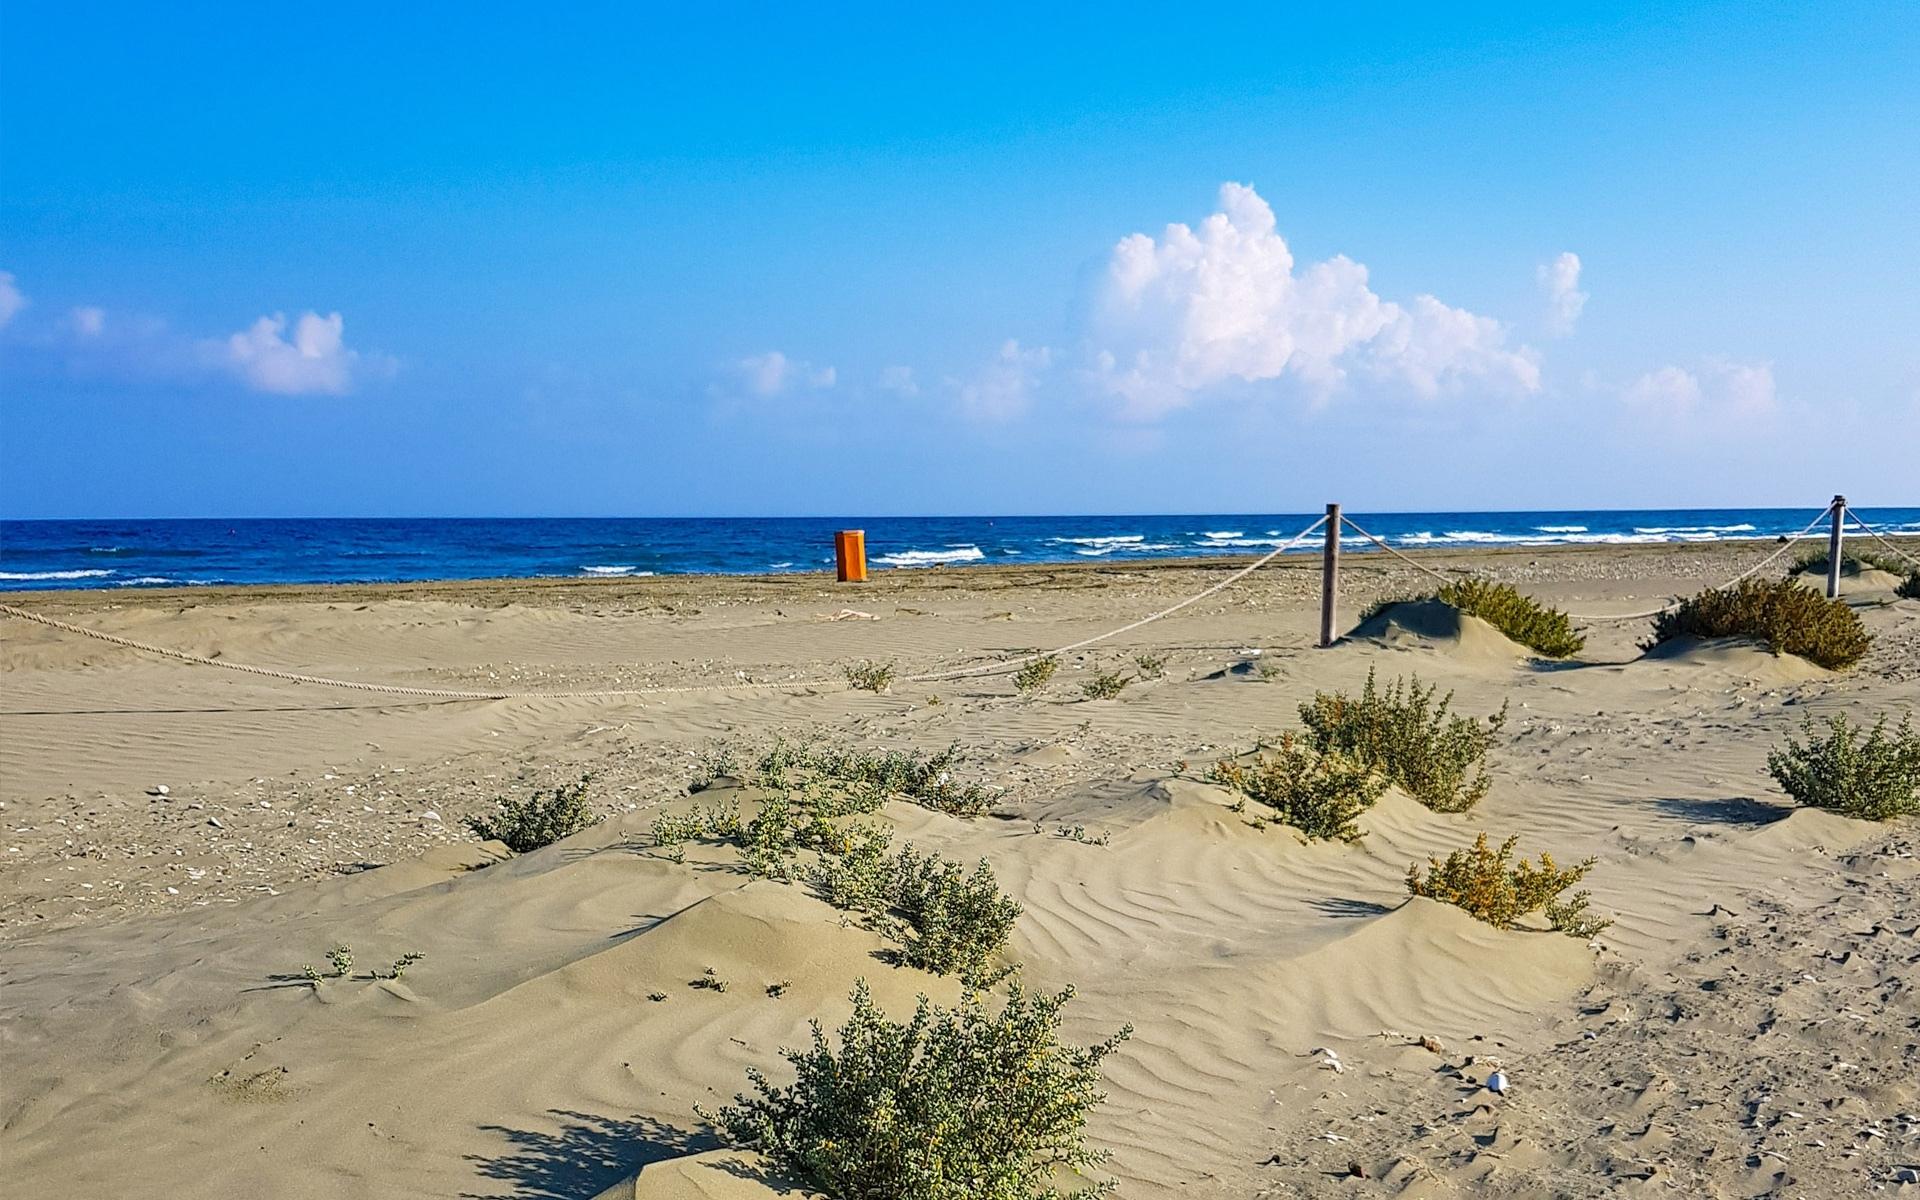 Meneou Beach in Cyprus